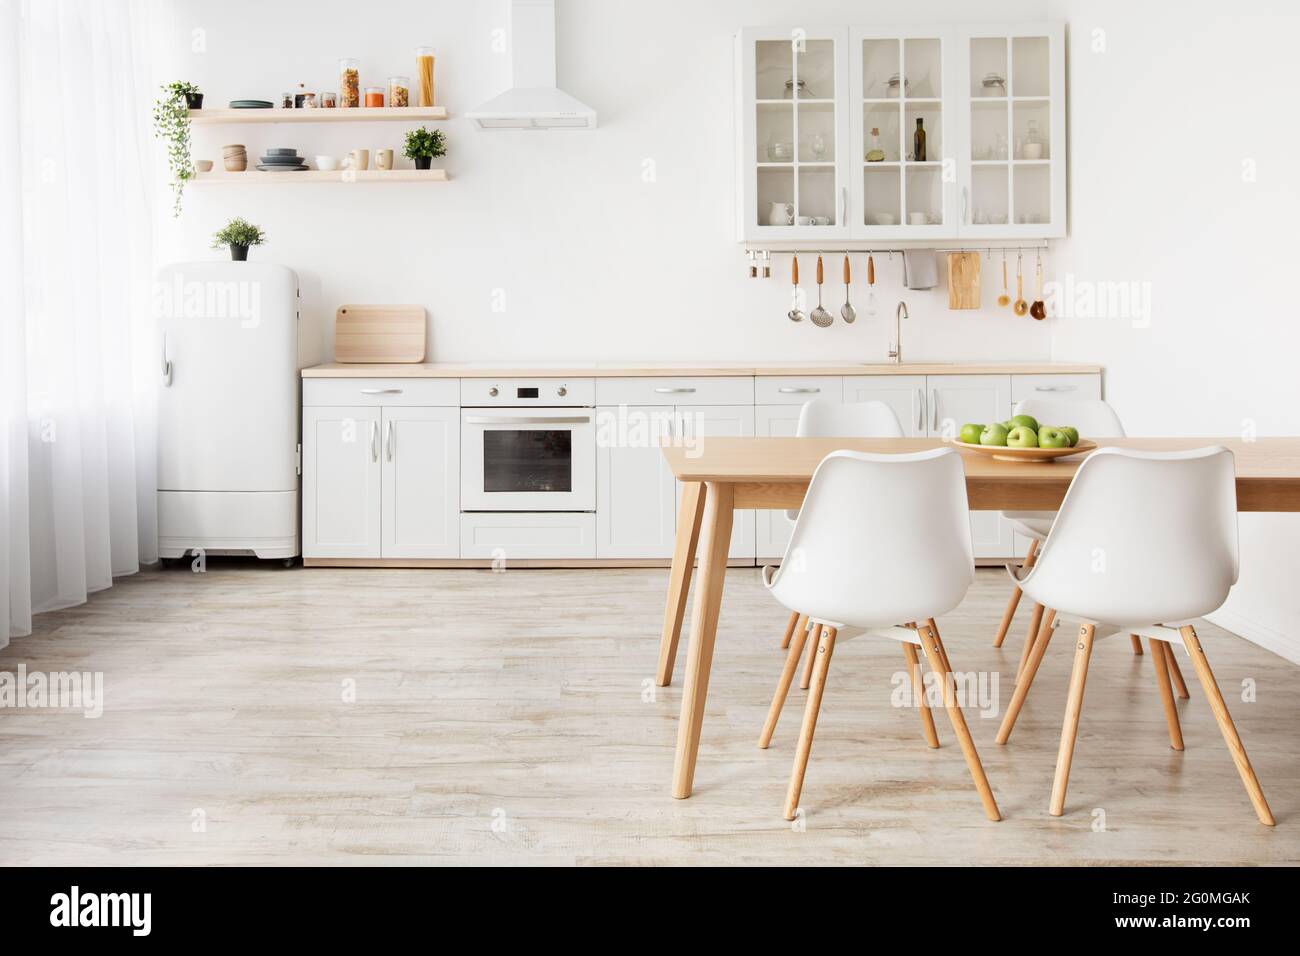 Interni nordici. Idea di luce scandinava cucina interna con bianco e legno da pranzo mobili, spazio vuoto Foto Stock